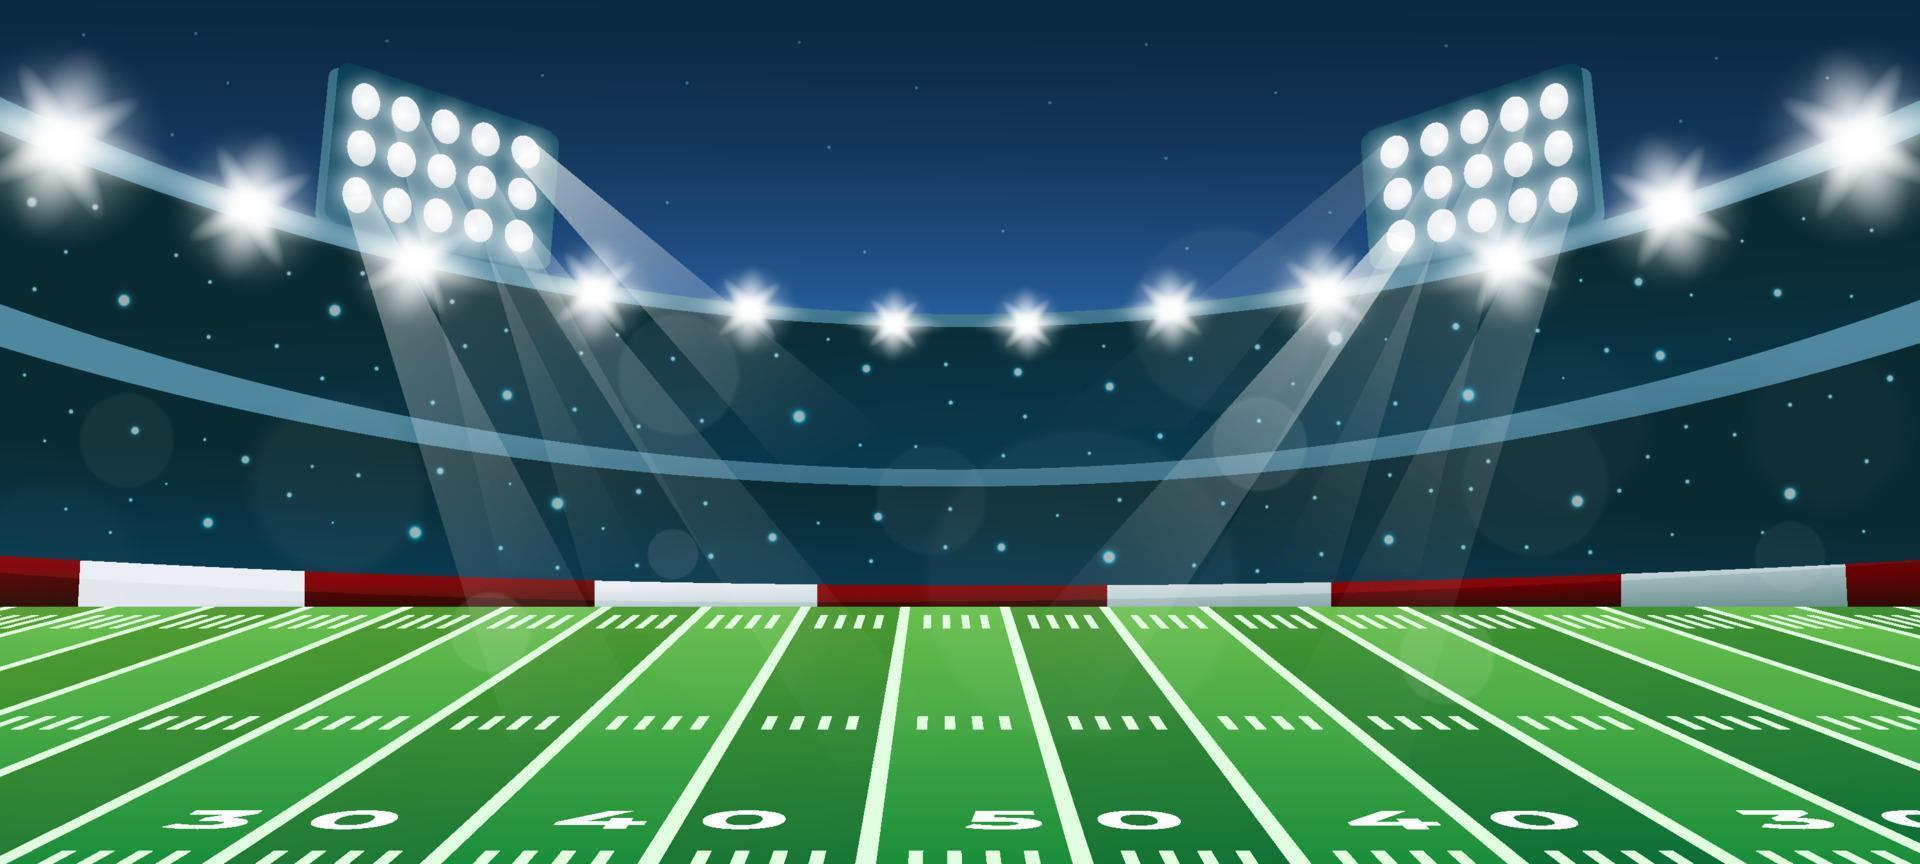 Super Bowl Stadion im Nacht Hintergrund vektor